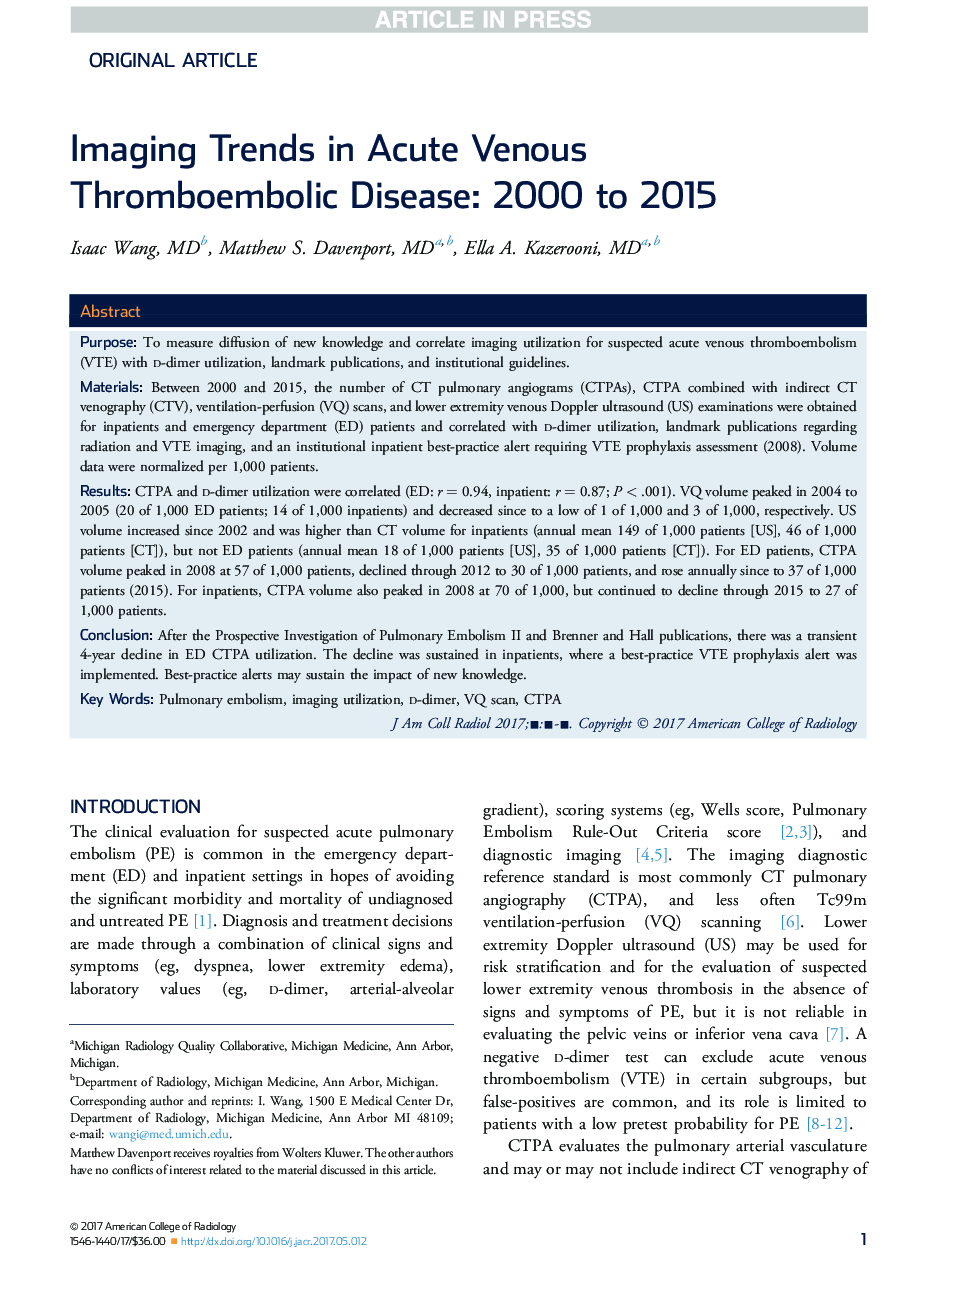 روند تصویربرداری در بیماری ترومبوآمبولیک حاد حاد: 2000 تا 2015 